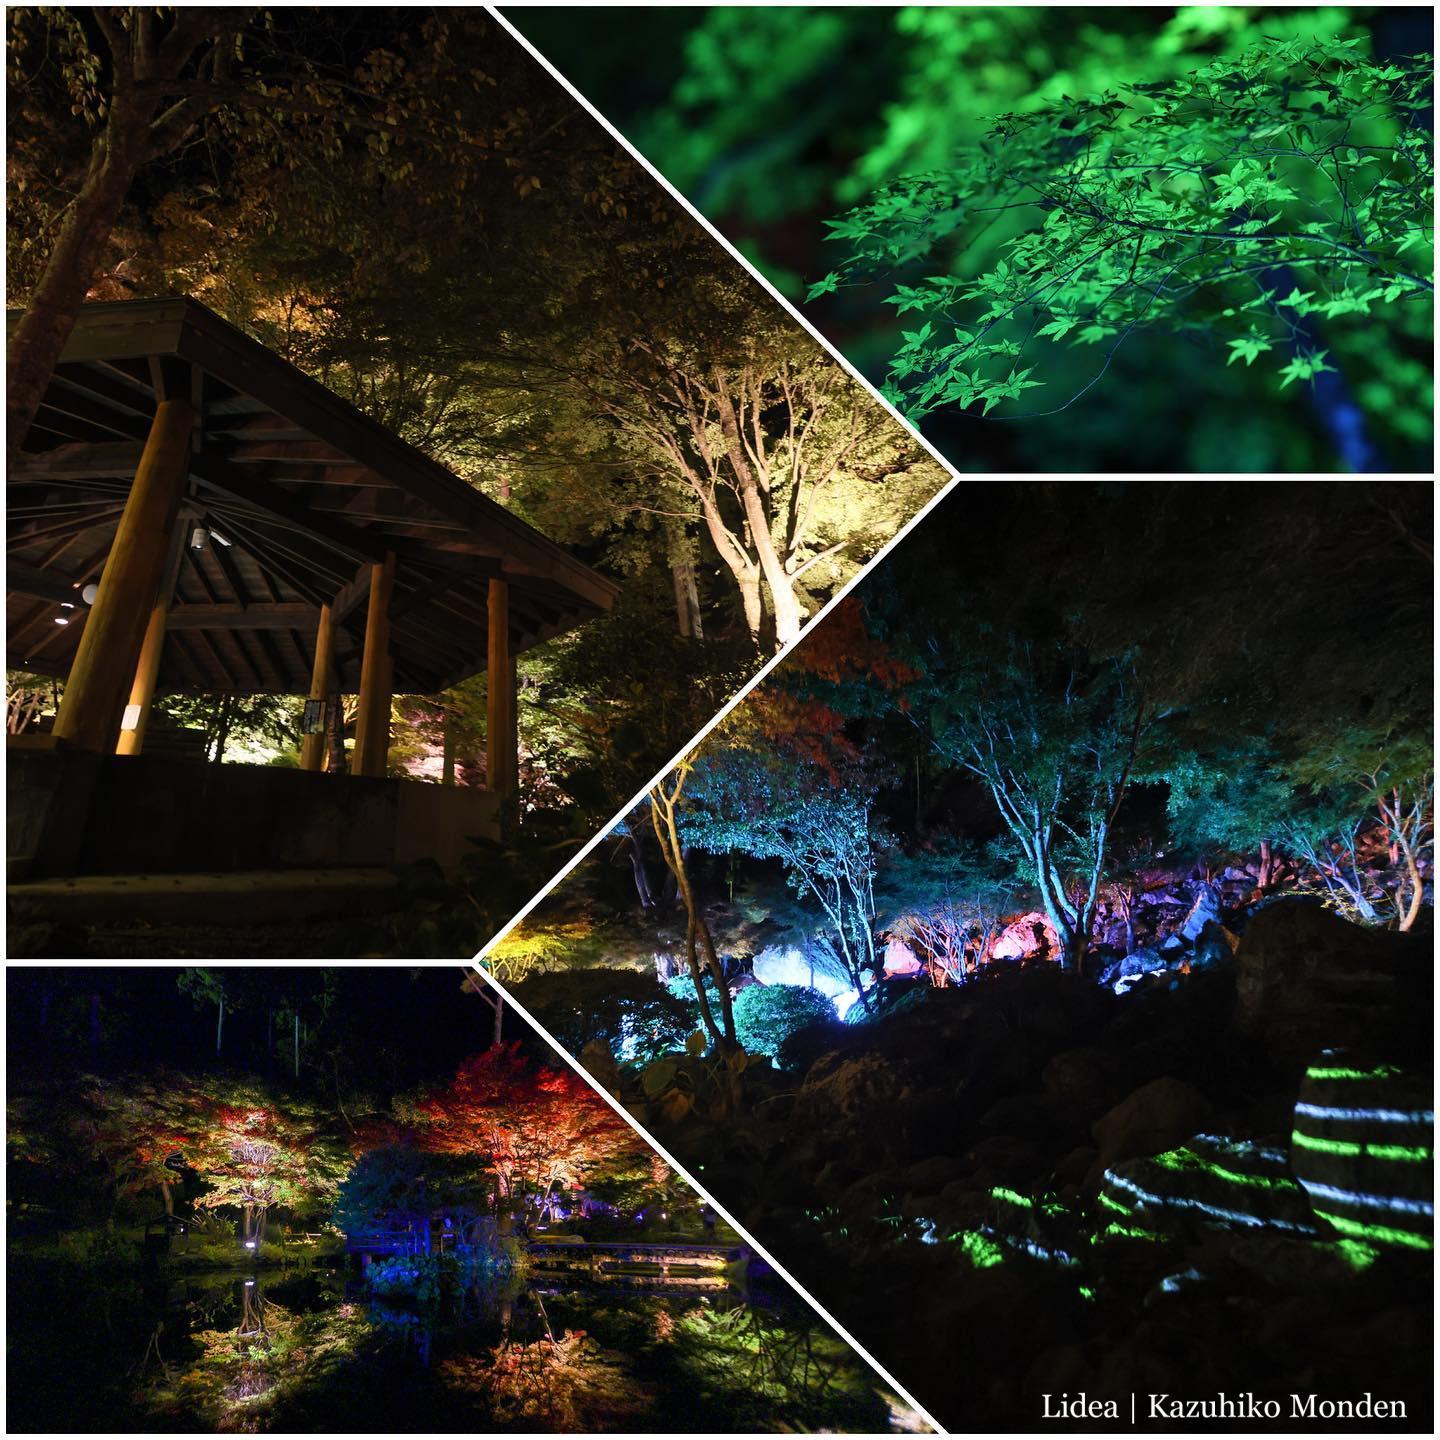 秋保・天守閣自然公園のライトアップ、今年も開催中。